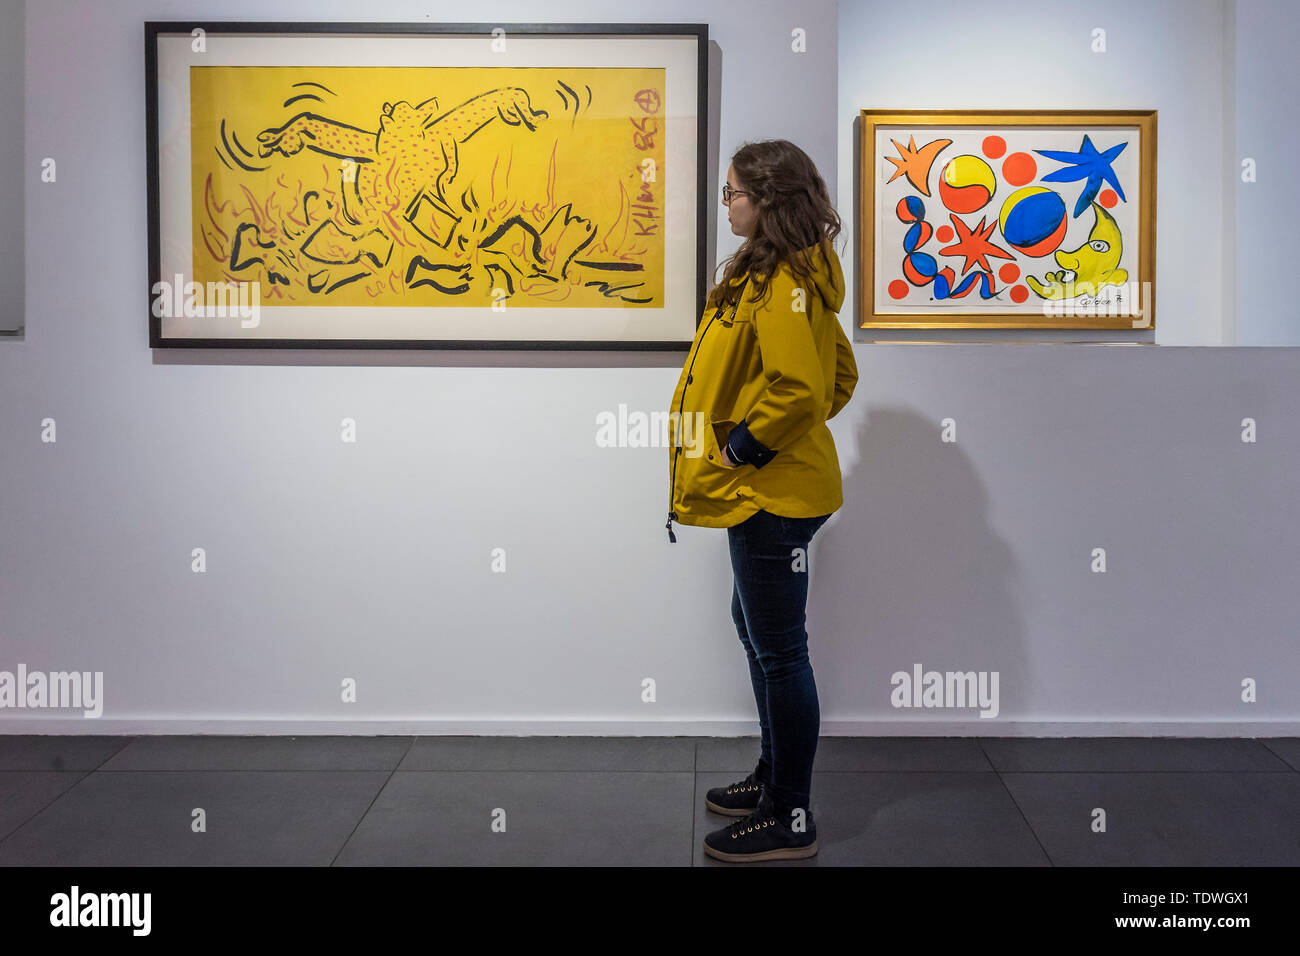 Londres, Royaume-Uni. 19 Jun 2019. Keith Haring (1958 - 1990), Sans titre, 1986, et Alexander Calder, Yellow Moon Face, 1970 - Galerie de l'Opéra célèbre son 25e anniversaire avec une nouvelle exposition intitulée Icônes américaines - une interprétation de l'Années 1980 New York street culture, avec un mélange d'œuvres médiatiques par les artistes du 20e siècle notamment Keith Haring, Jean-Michel Basquiat, Andy Warhol et Alexander Calder. Crédit : Guy Bell/Alamy Live News Banque D'Images